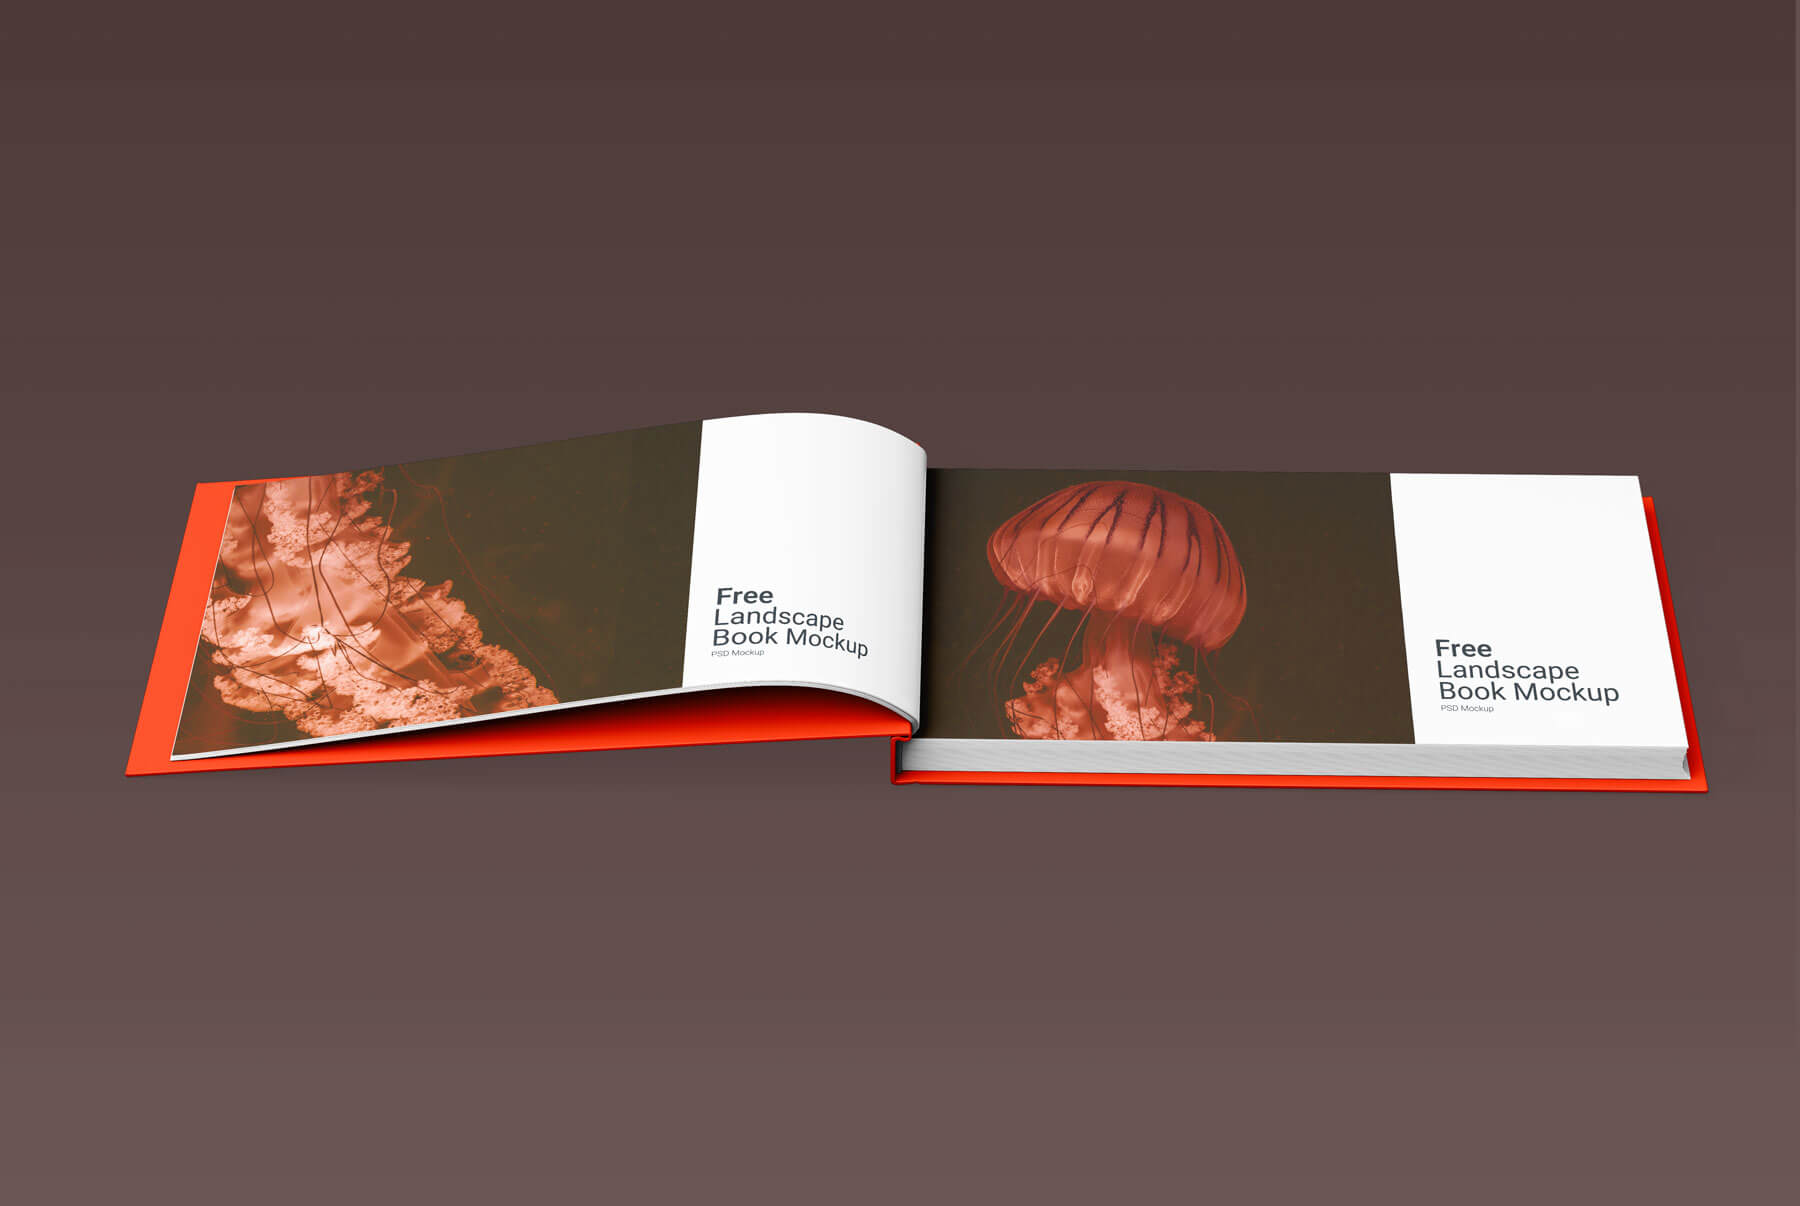 Open Landscape Book Mockups Free PSD Set